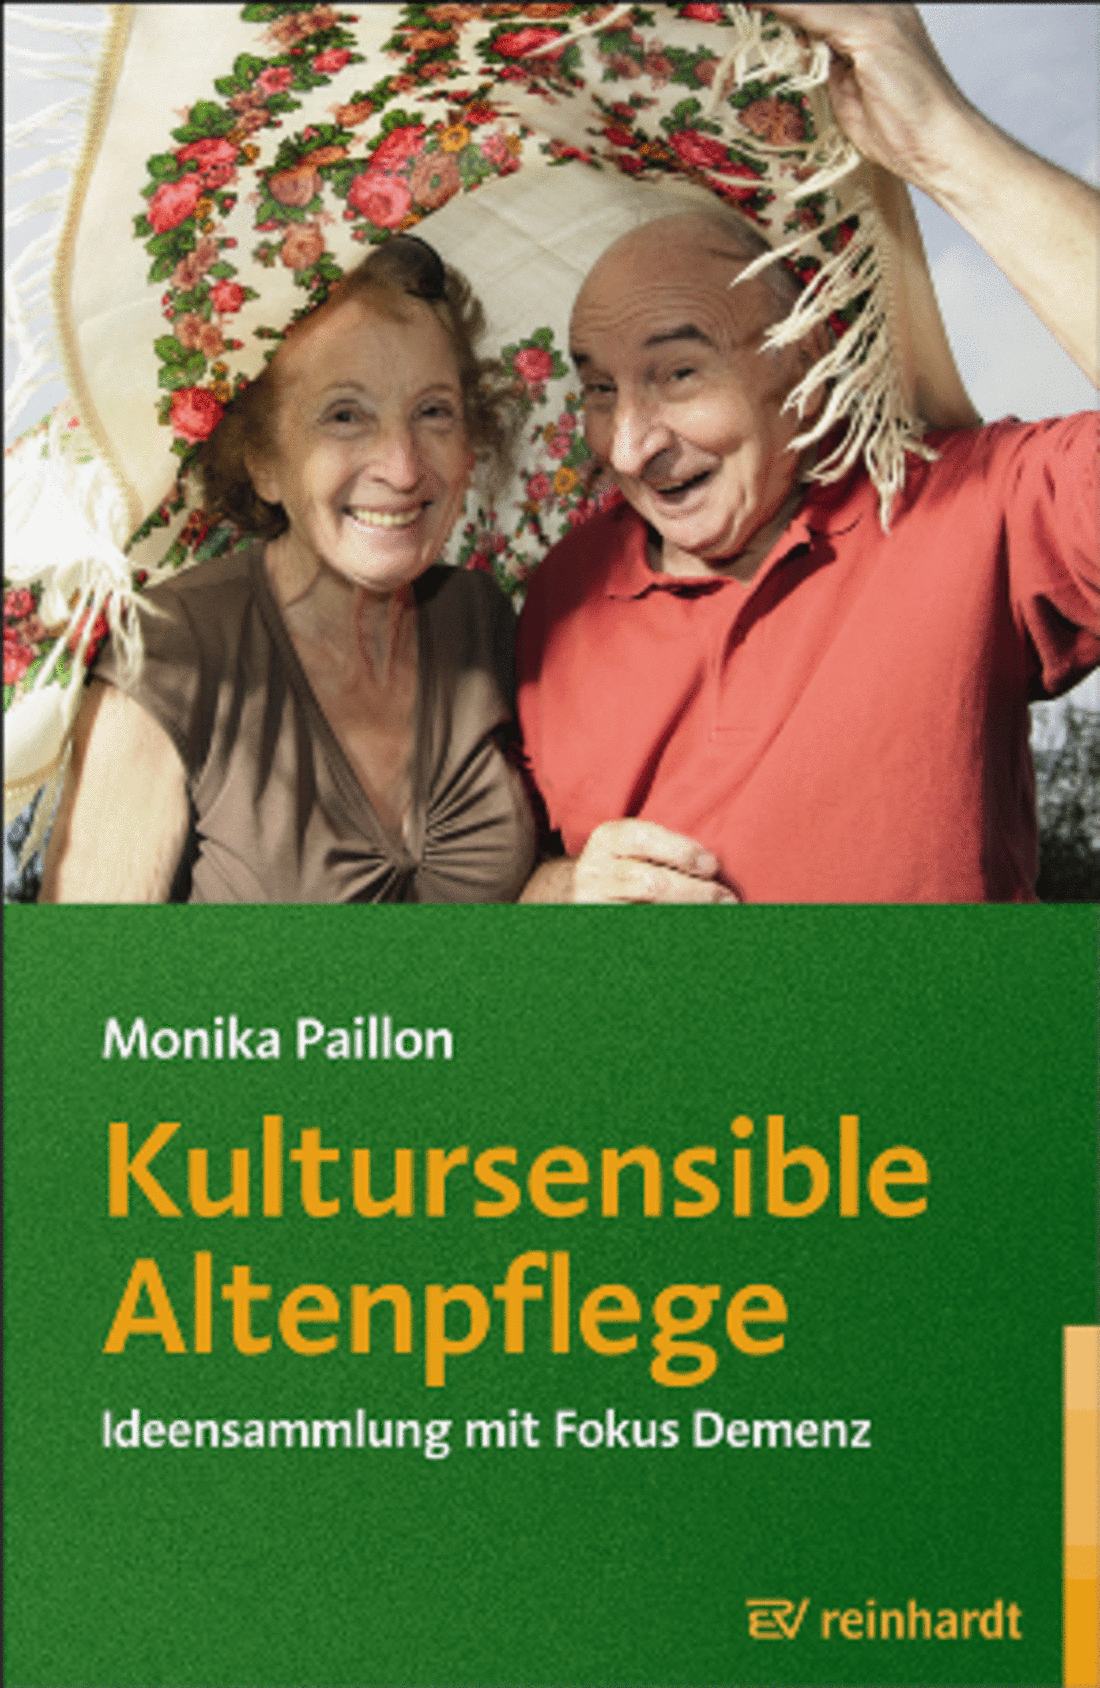 Bild: Kultursensible Altenpflege